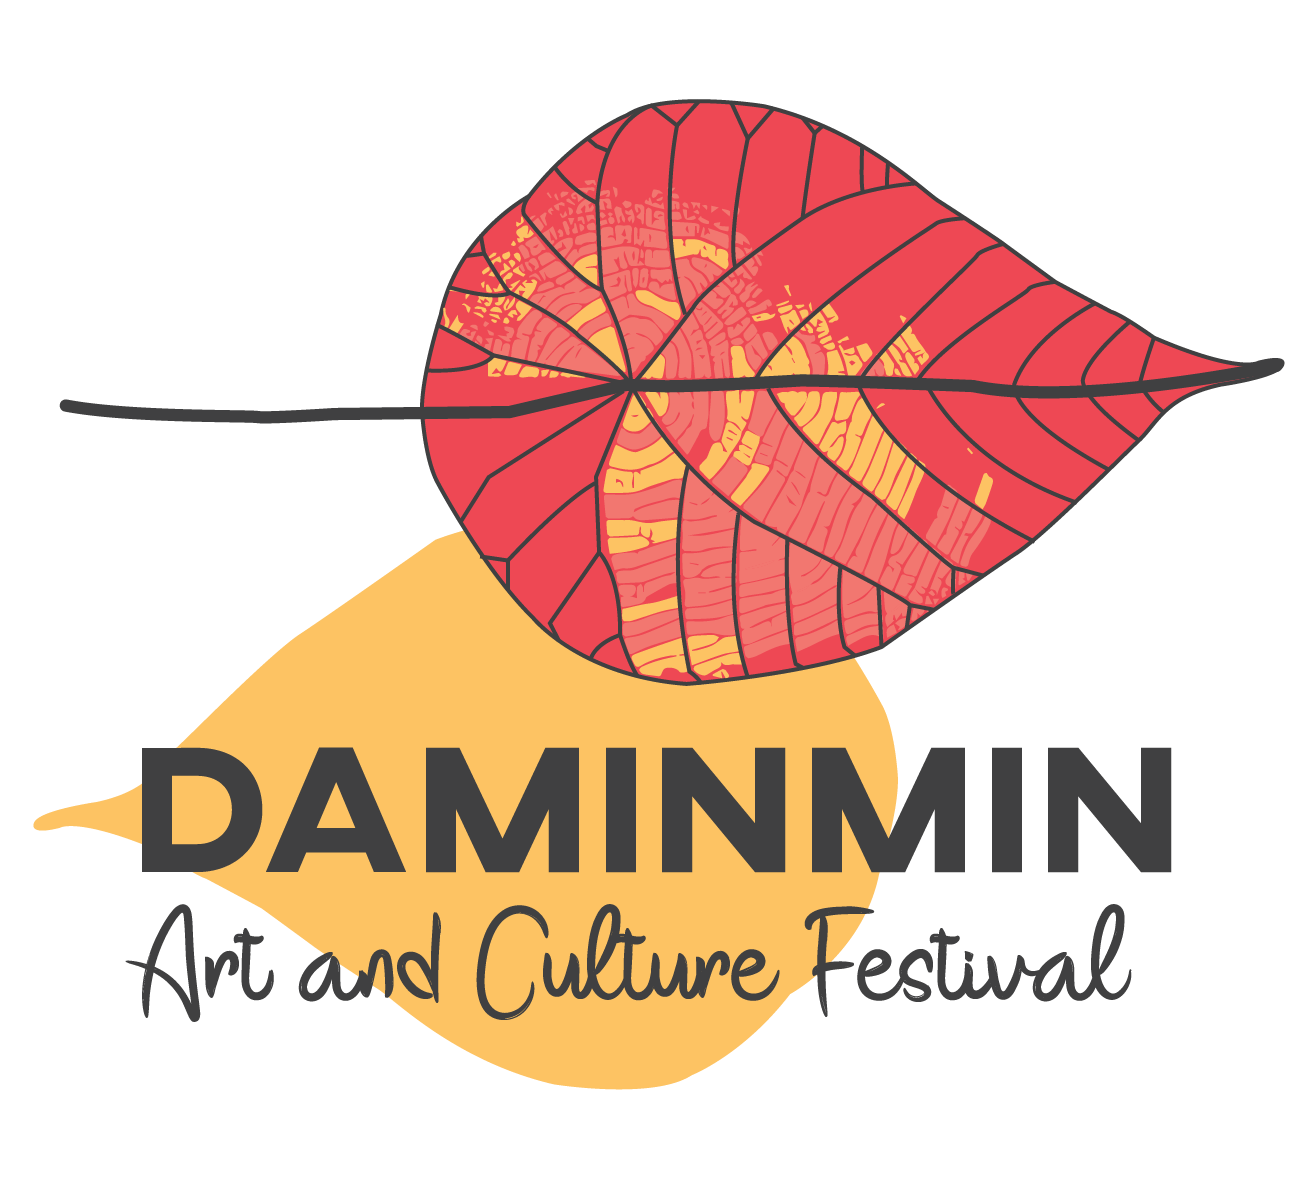 Daminmin arts and culture festival